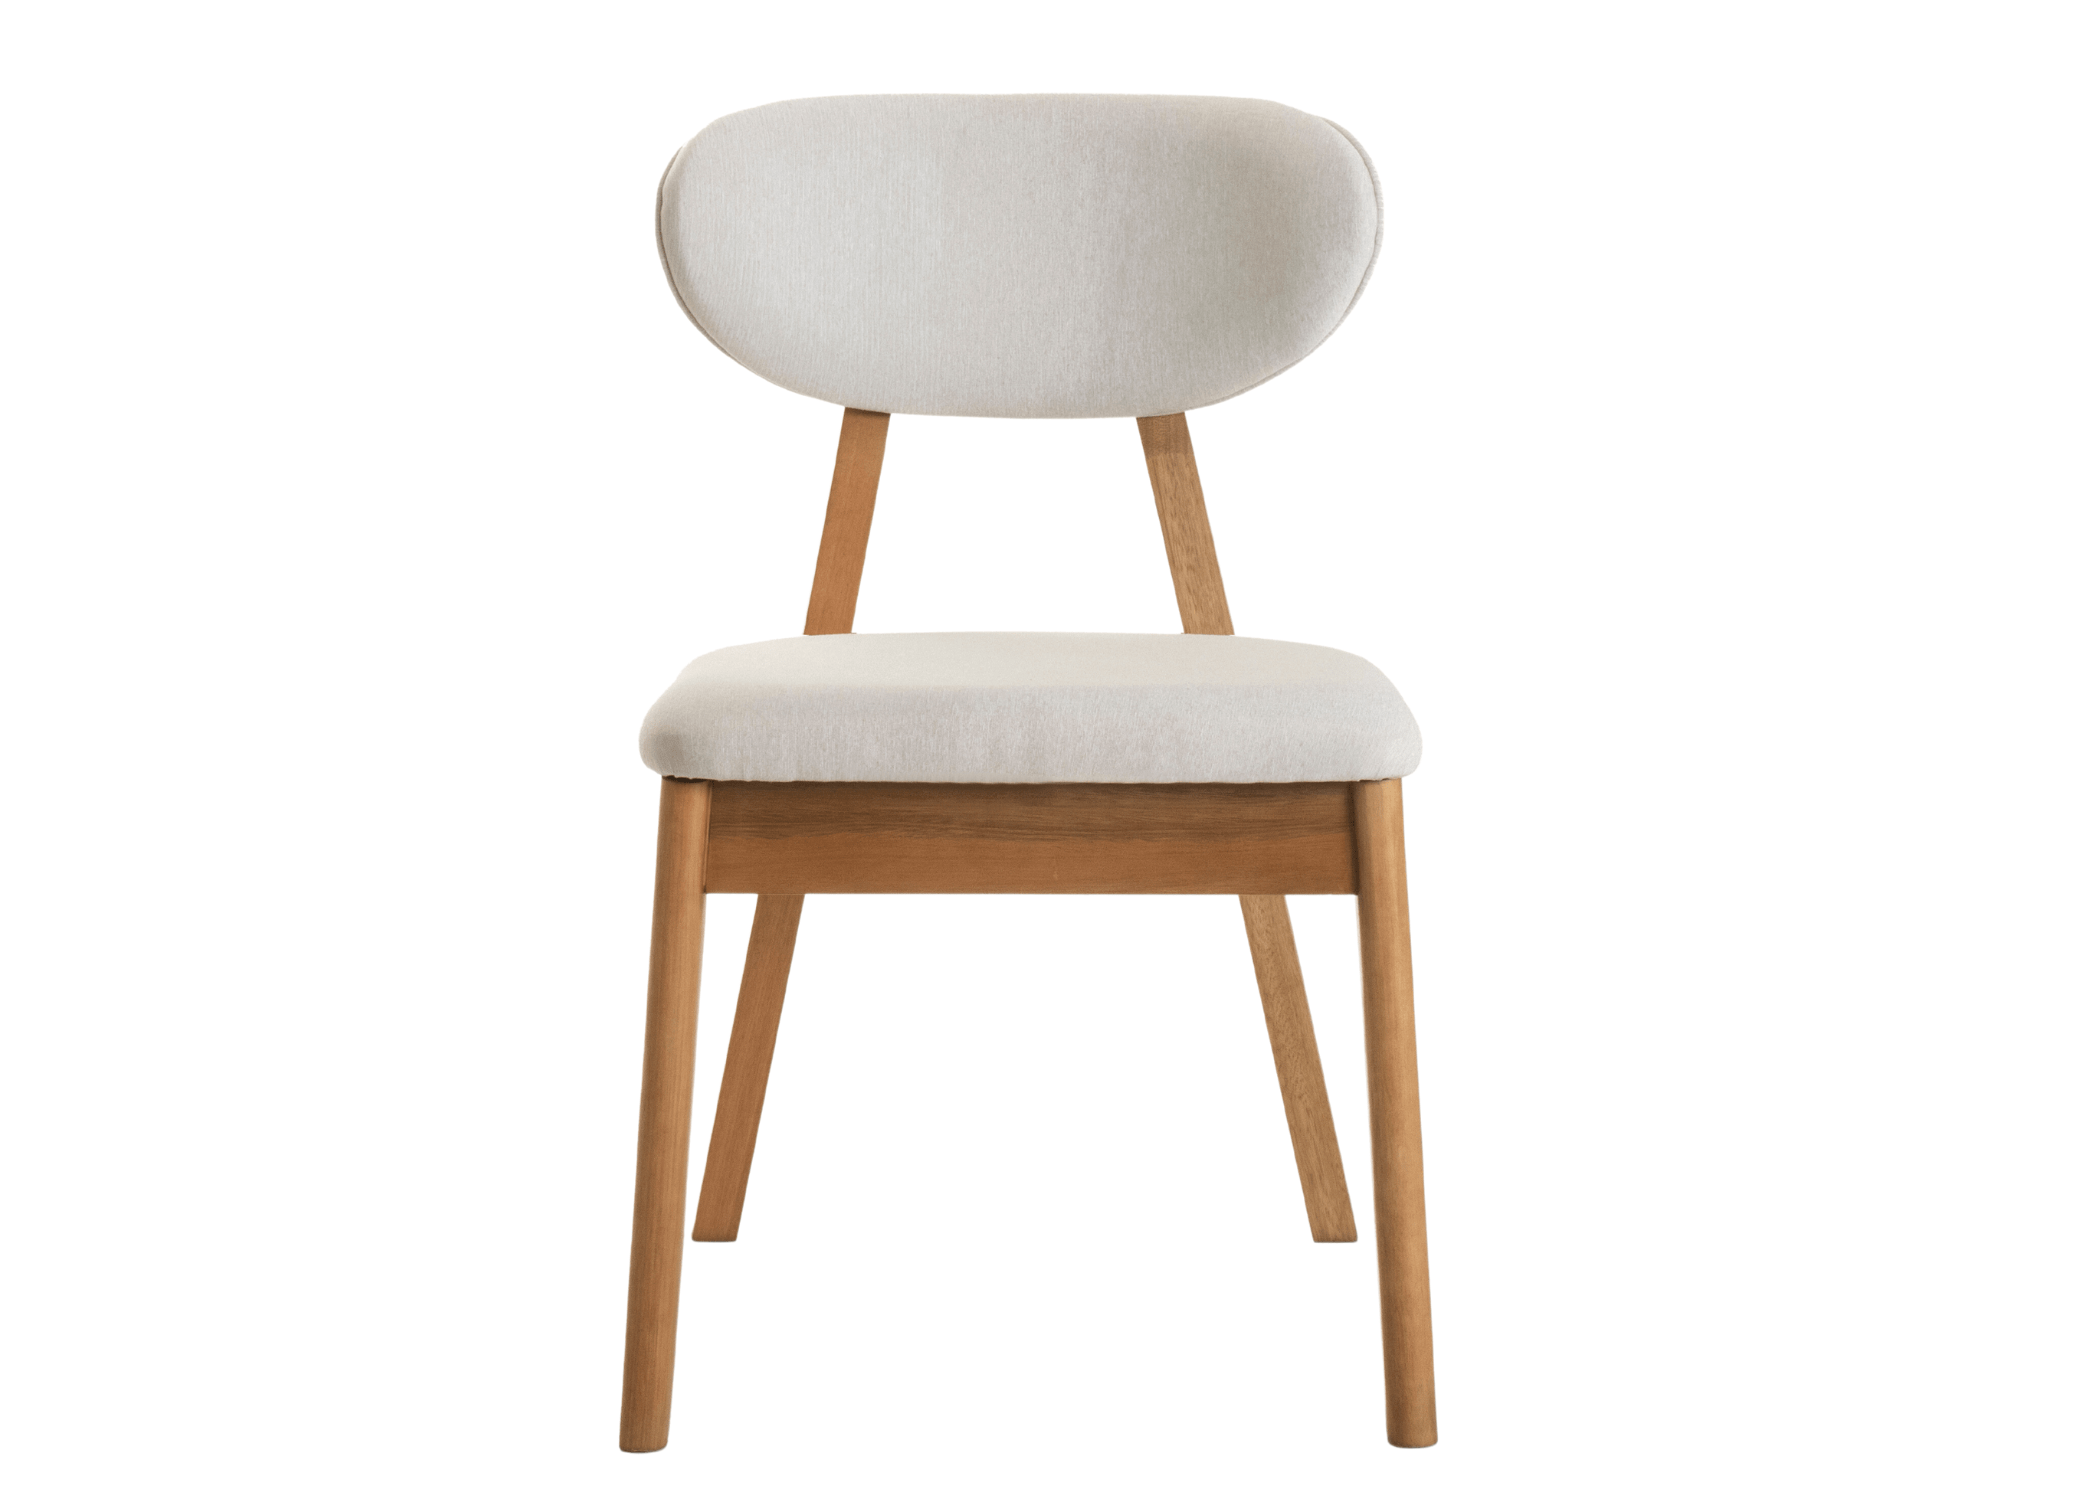 Cadeira Dunas: funcionalidade e naturalidade em um design elegante.